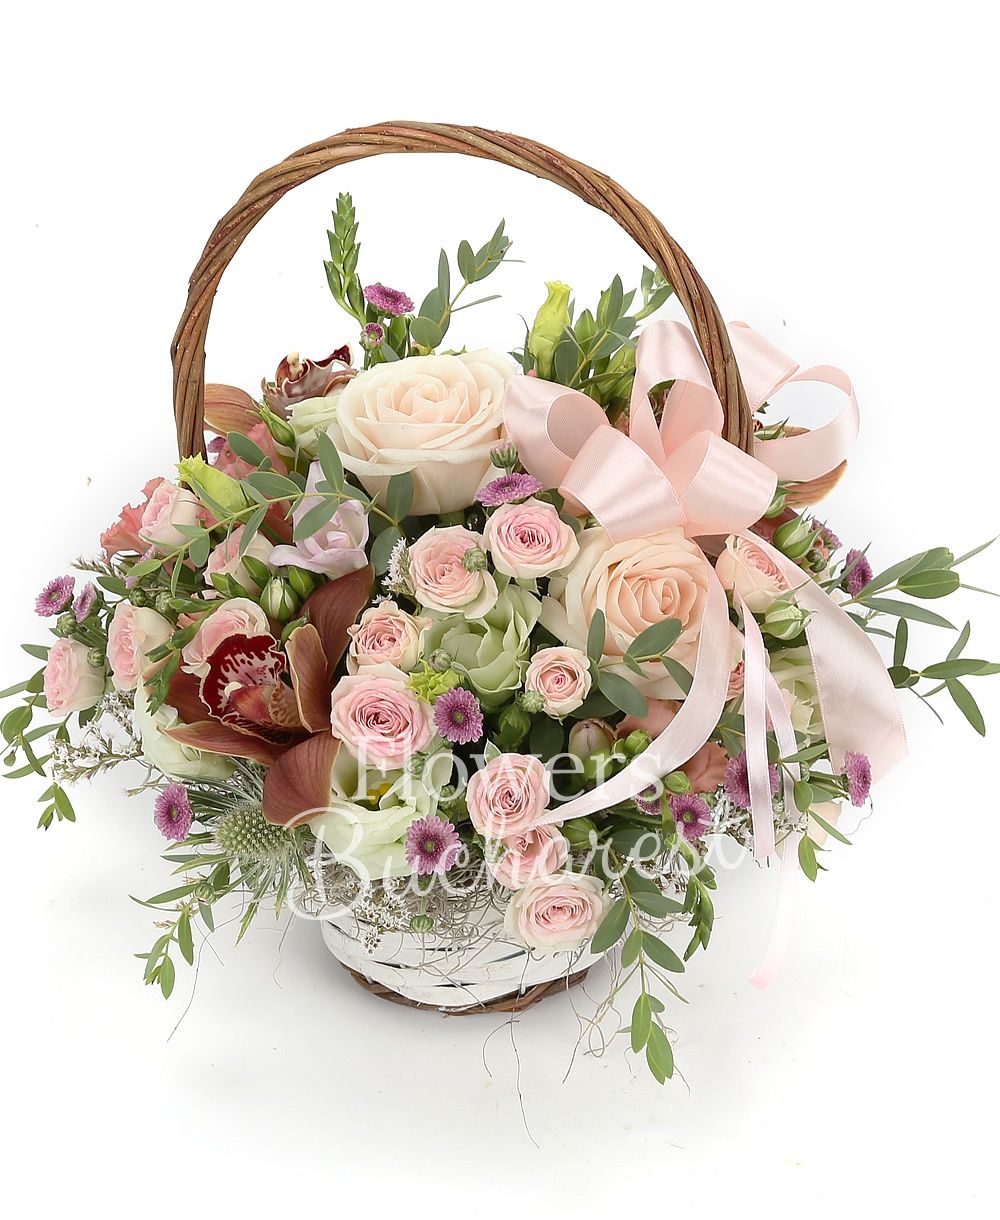 3 pink roses, 3 santini, 5 pink miniroses, 3 pink lisianthus, 3 green lisianthus, 2 white santini, 3 pink santini, greenery